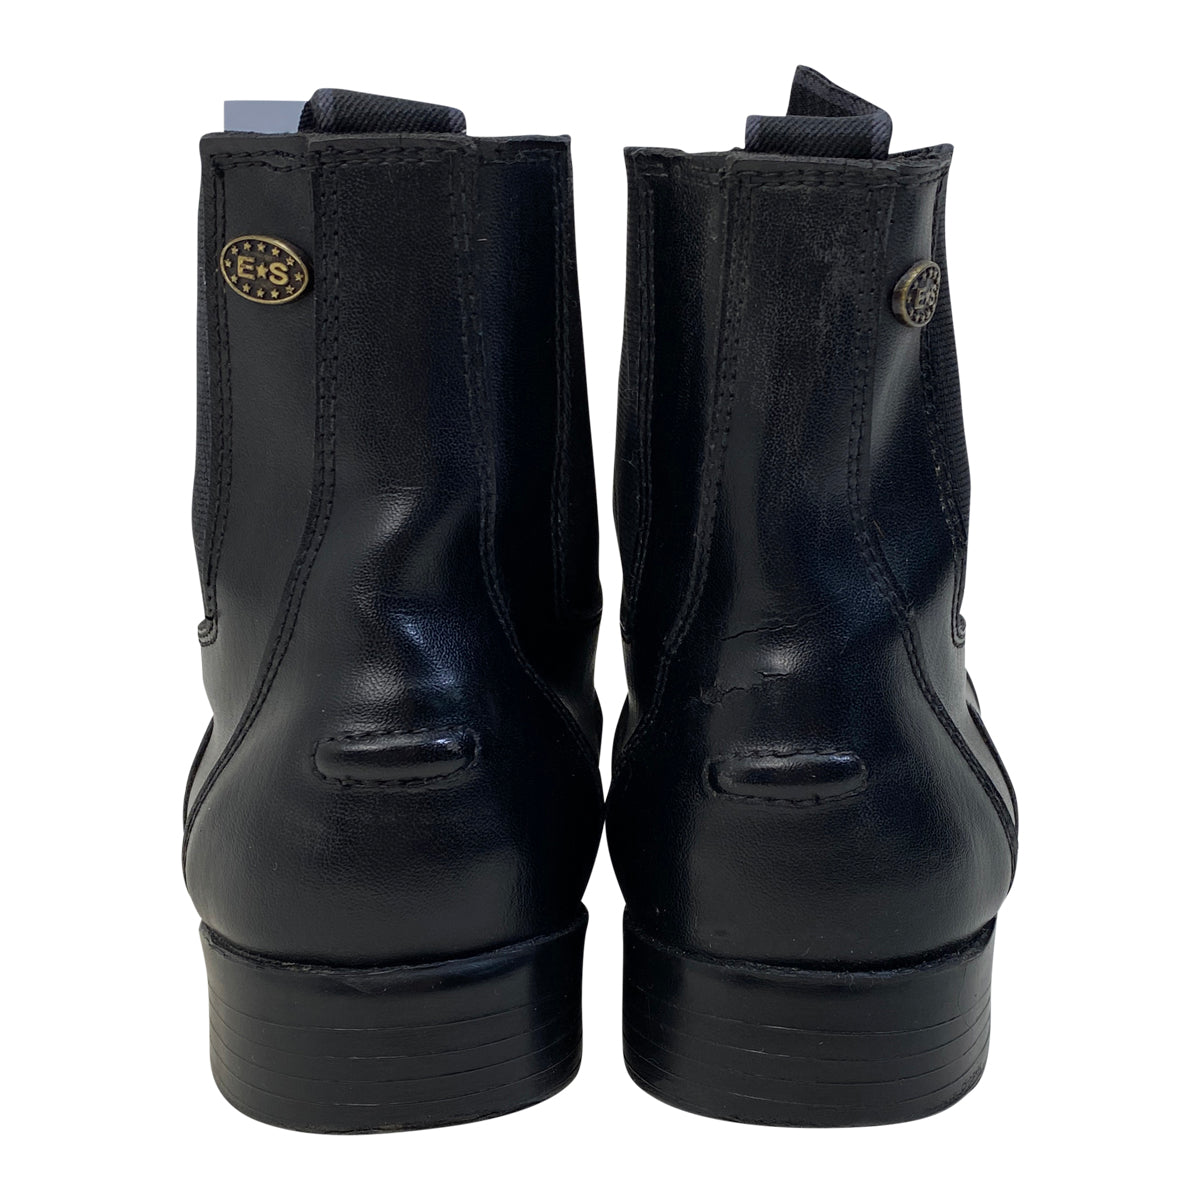 Equistar Zip Paddock Boots in Black